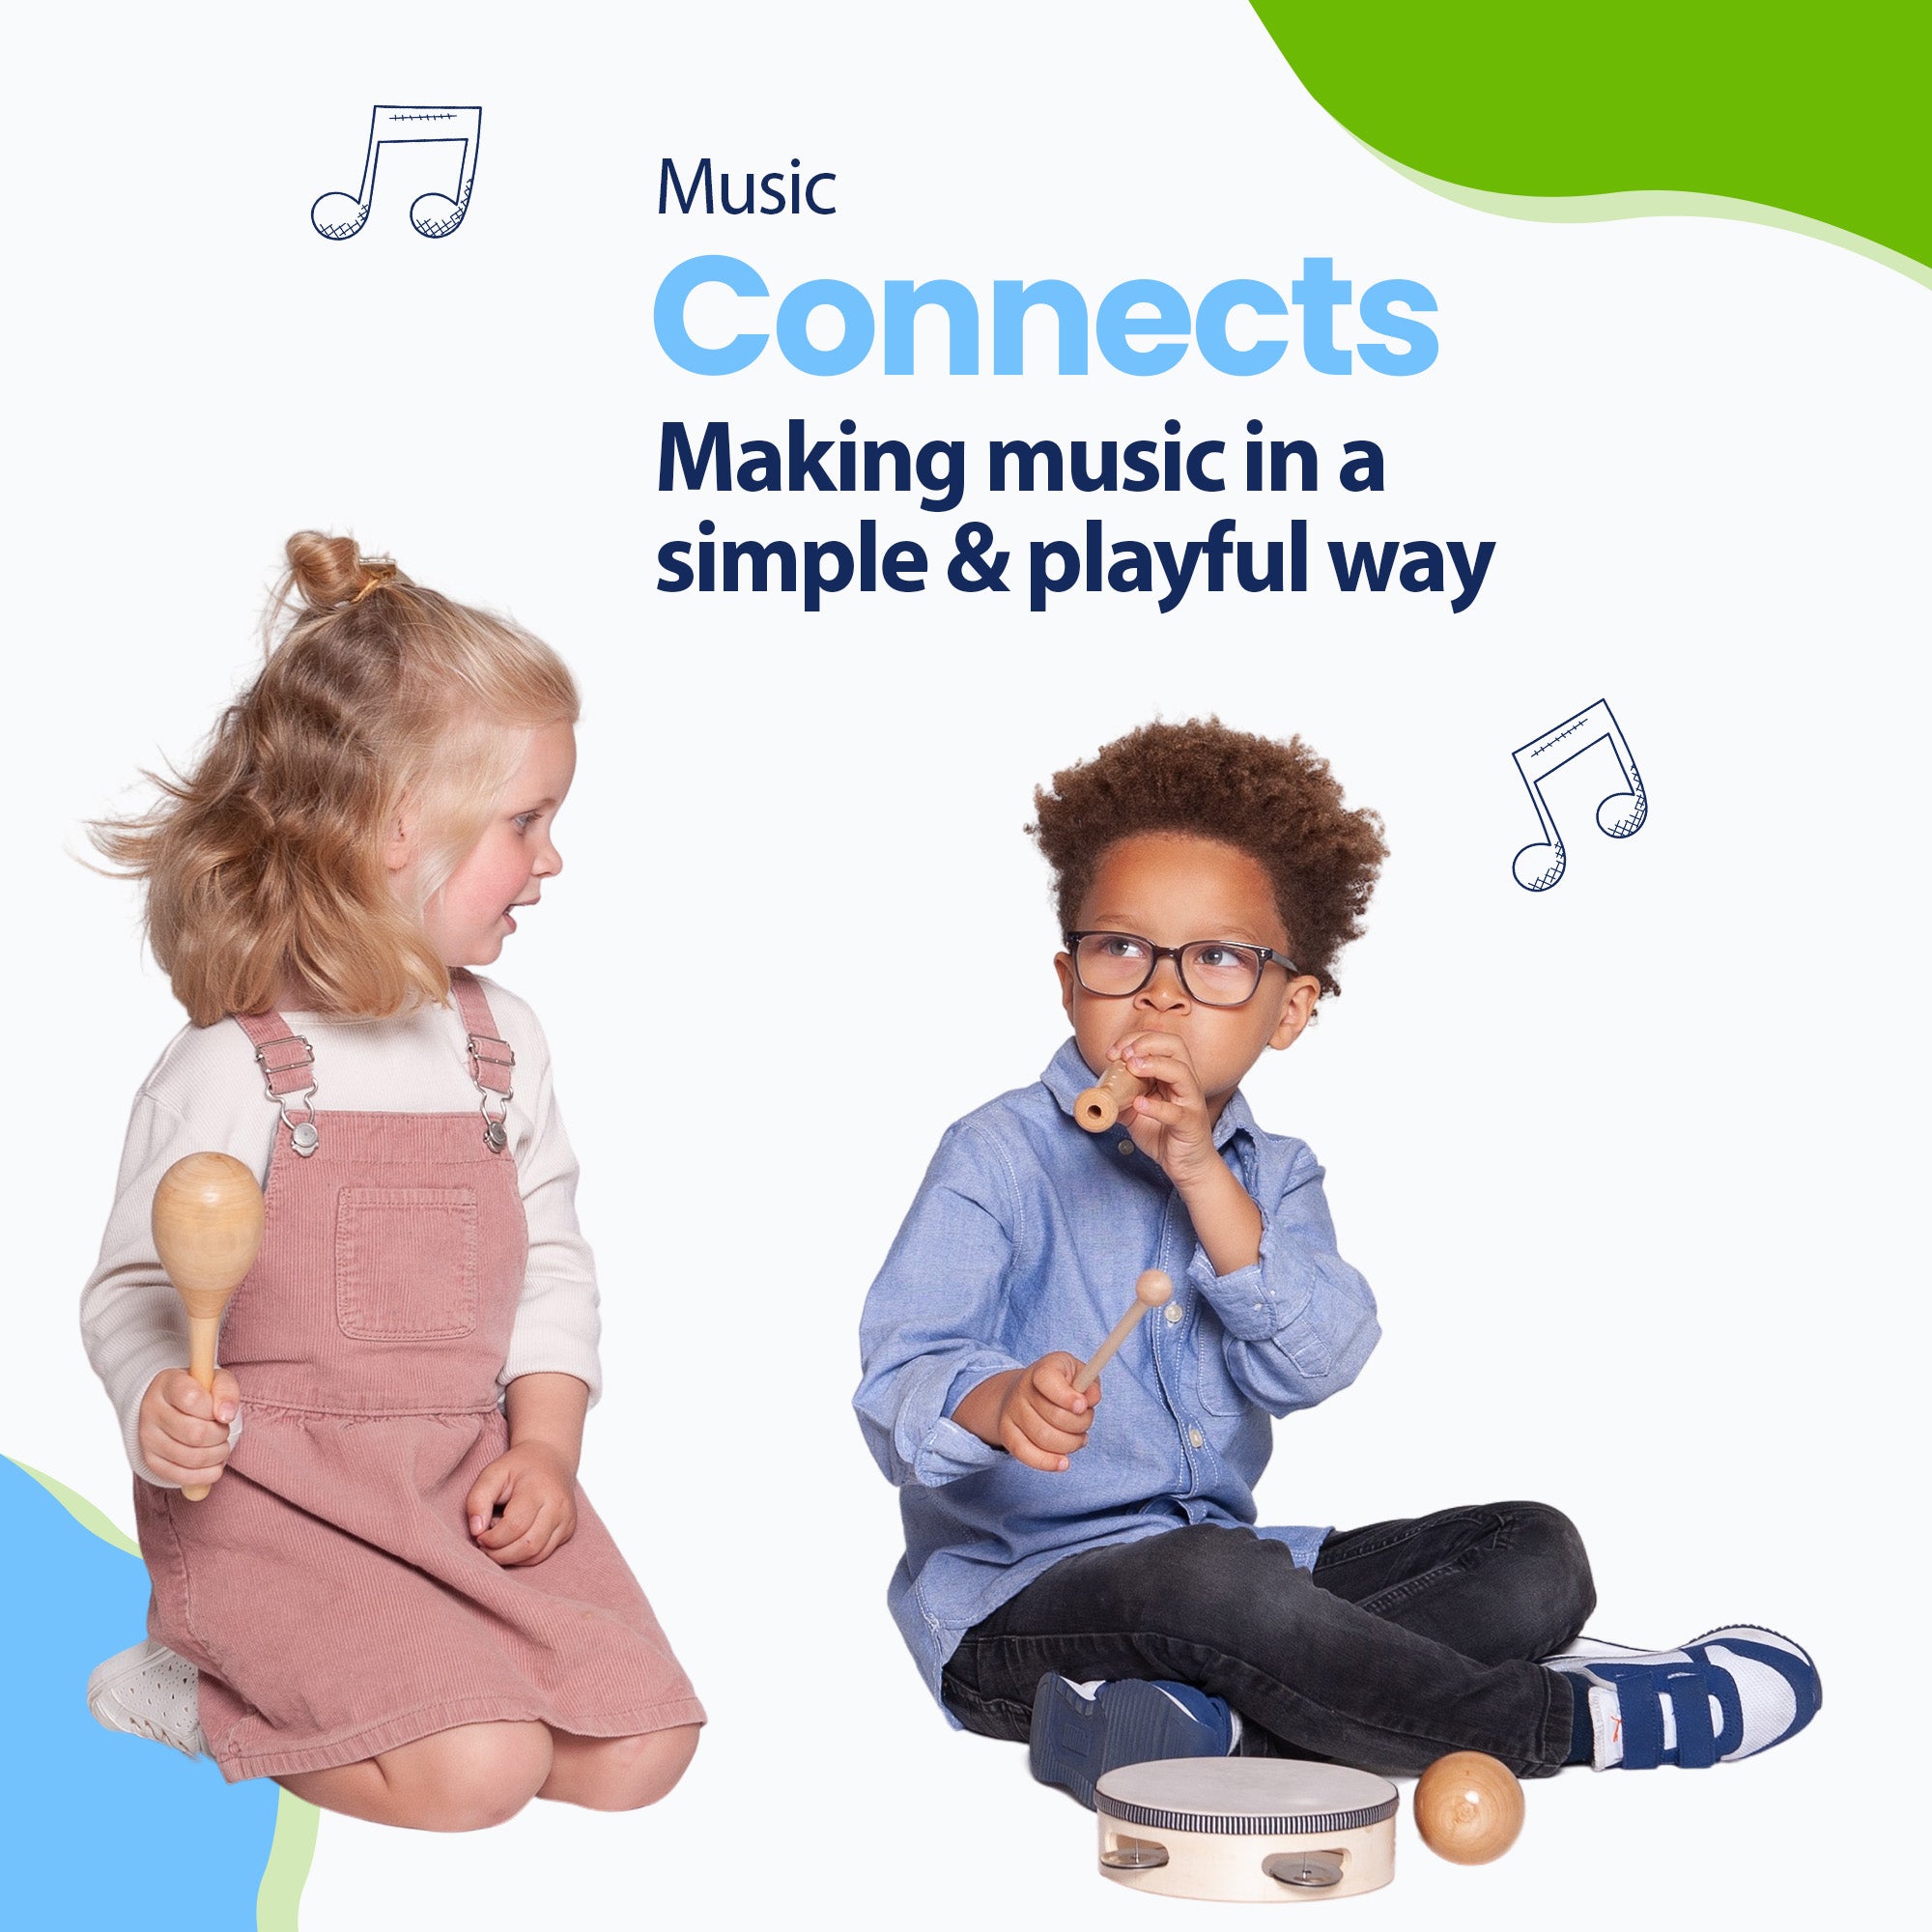 Musik forbinder voksne men også børn. Lær dit barn at spille sammen og udvikle sit musikalske talent